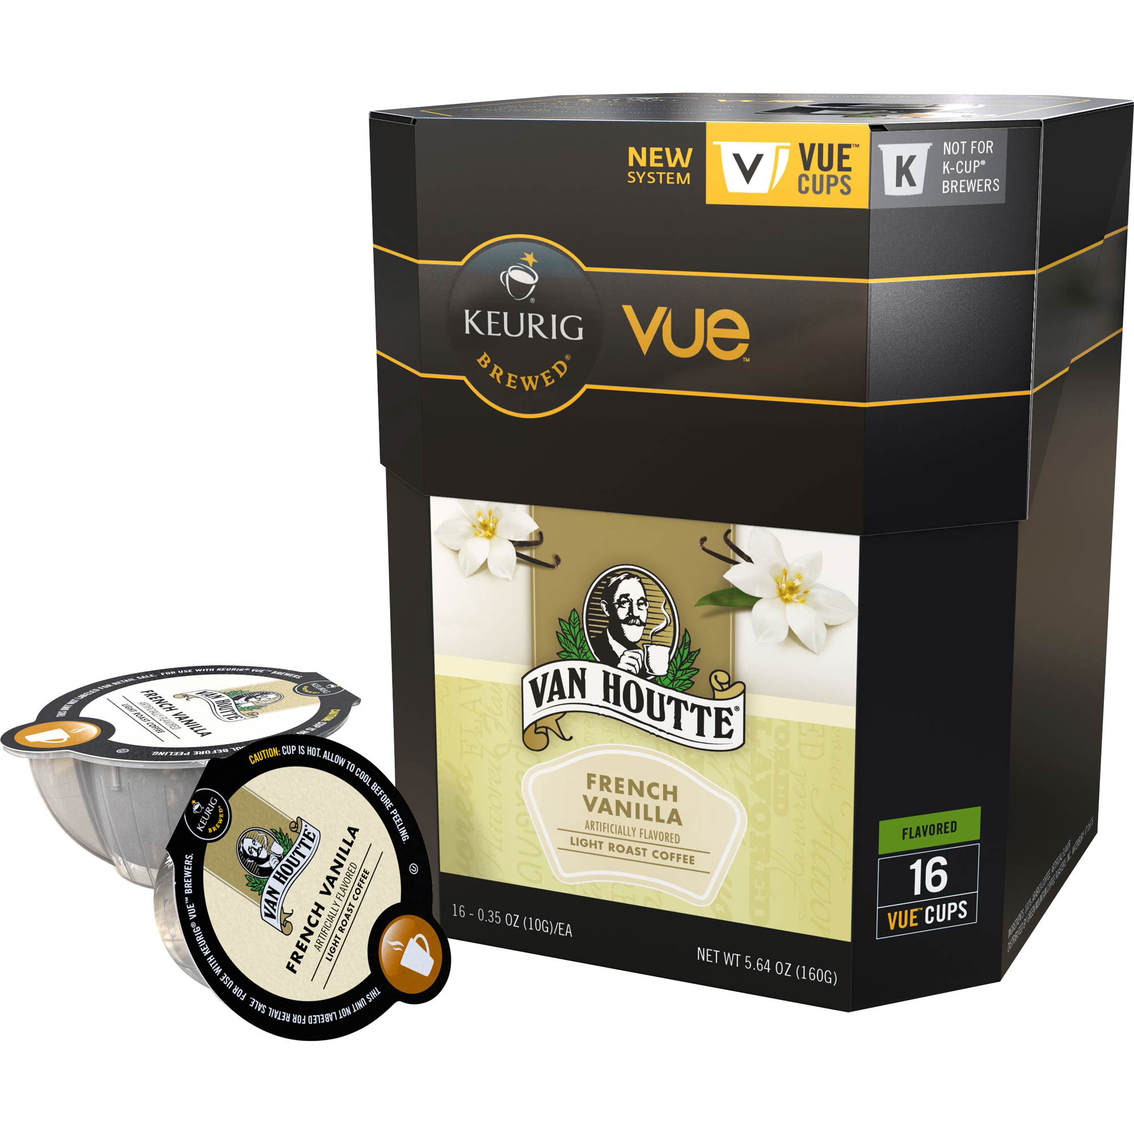 Van Houtte French Vanilla Coffee Keurig Vue Cups 16 Pk. | Atg Archive ...